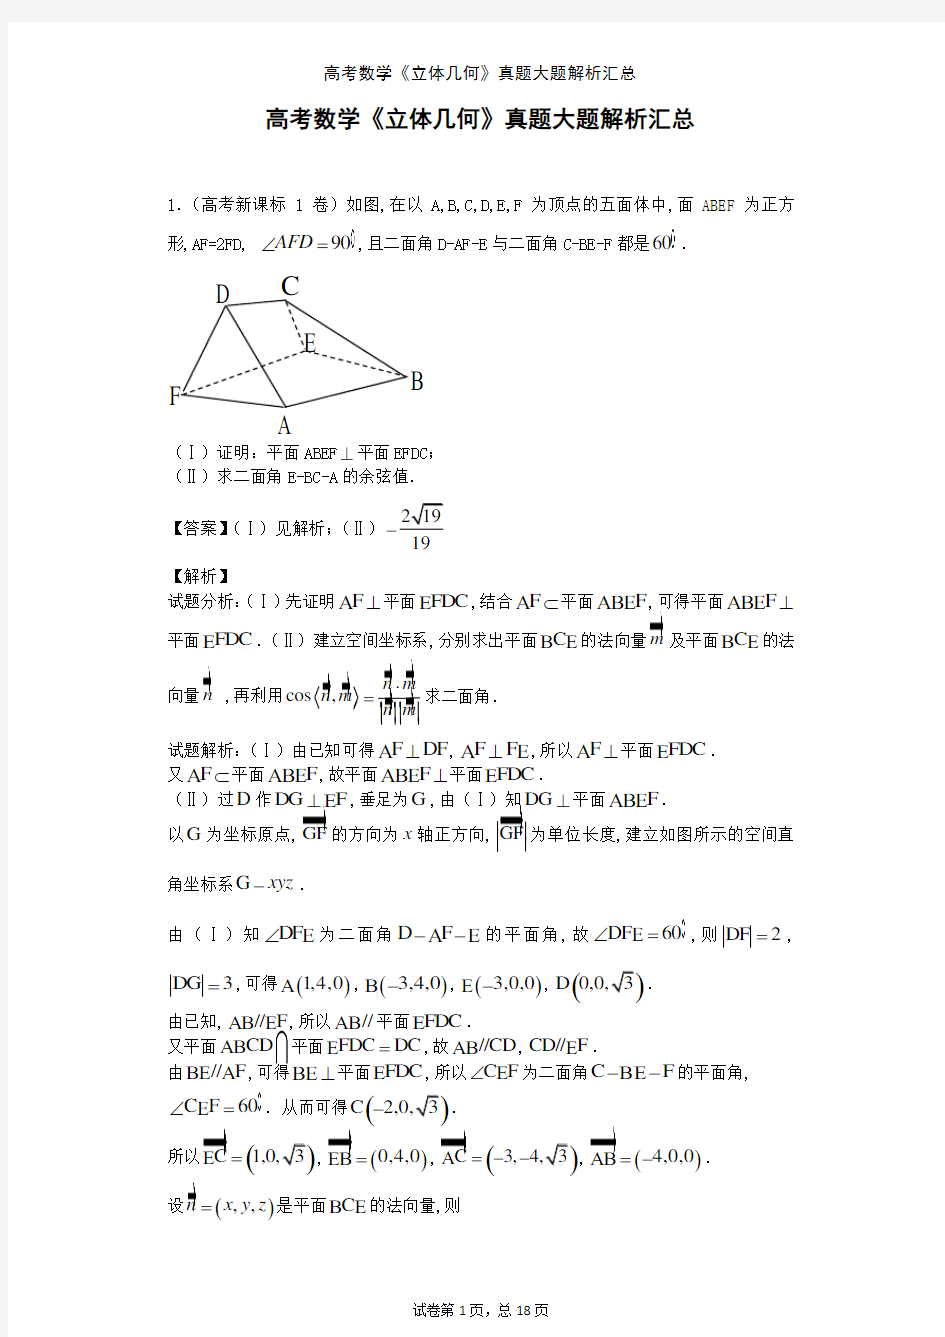 高考数学《立体几何》真题大题解析汇总